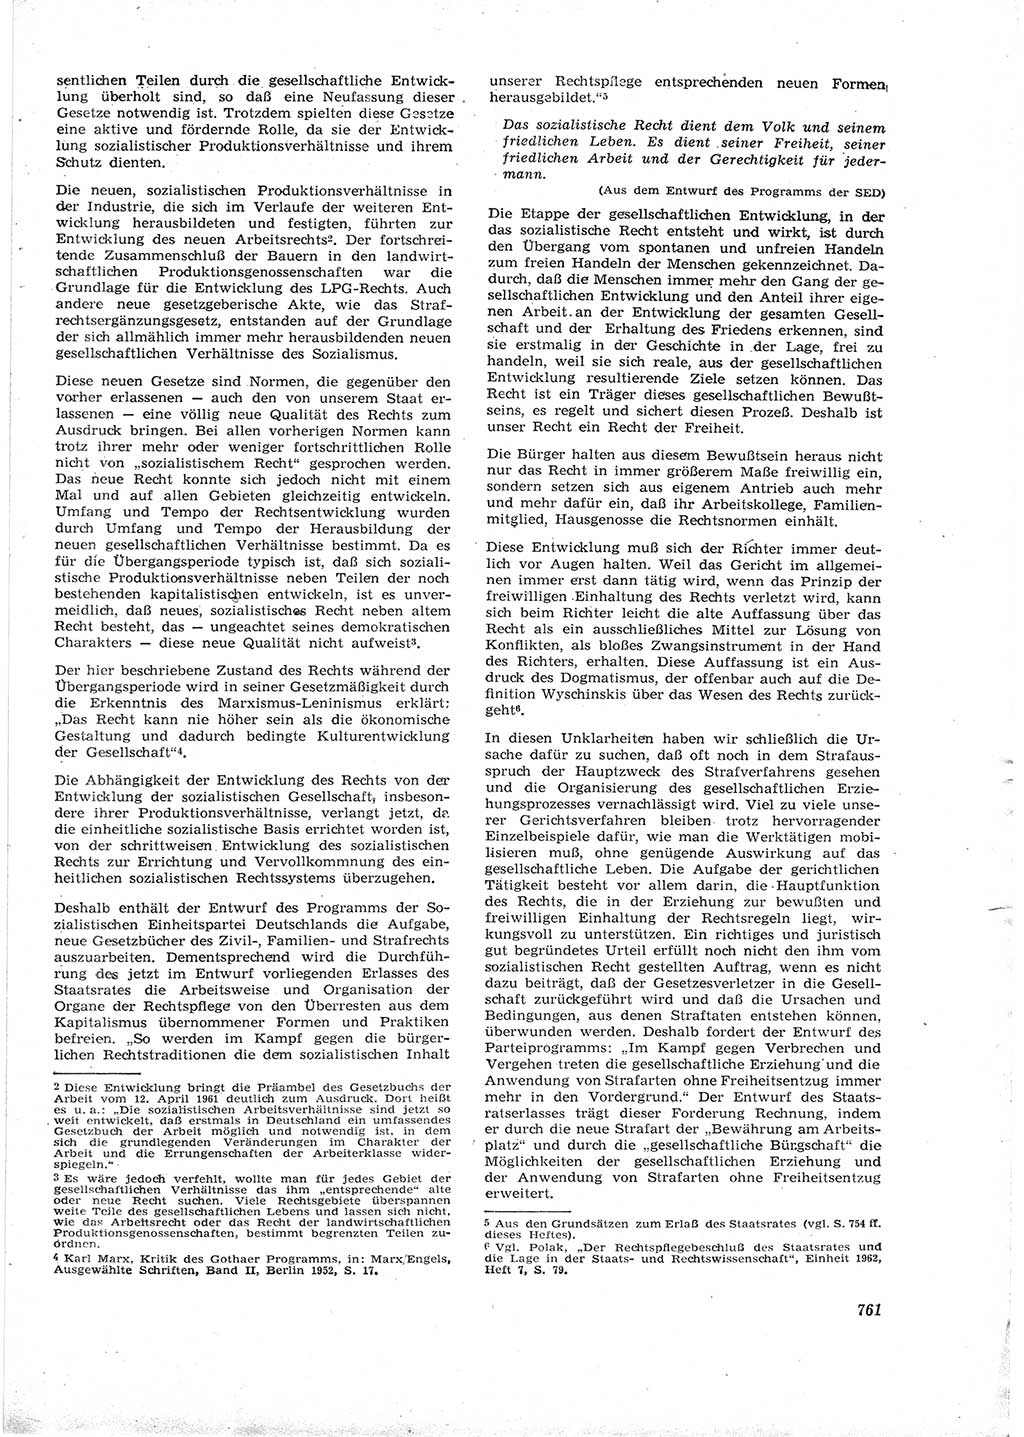 Neue Justiz (NJ), Zeitschrift für Recht und Rechtswissenschaft [Deutsche Demokratische Republik (DDR)], 16. Jahrgang 1962, Seite 761 (NJ DDR 1962, S. 761)